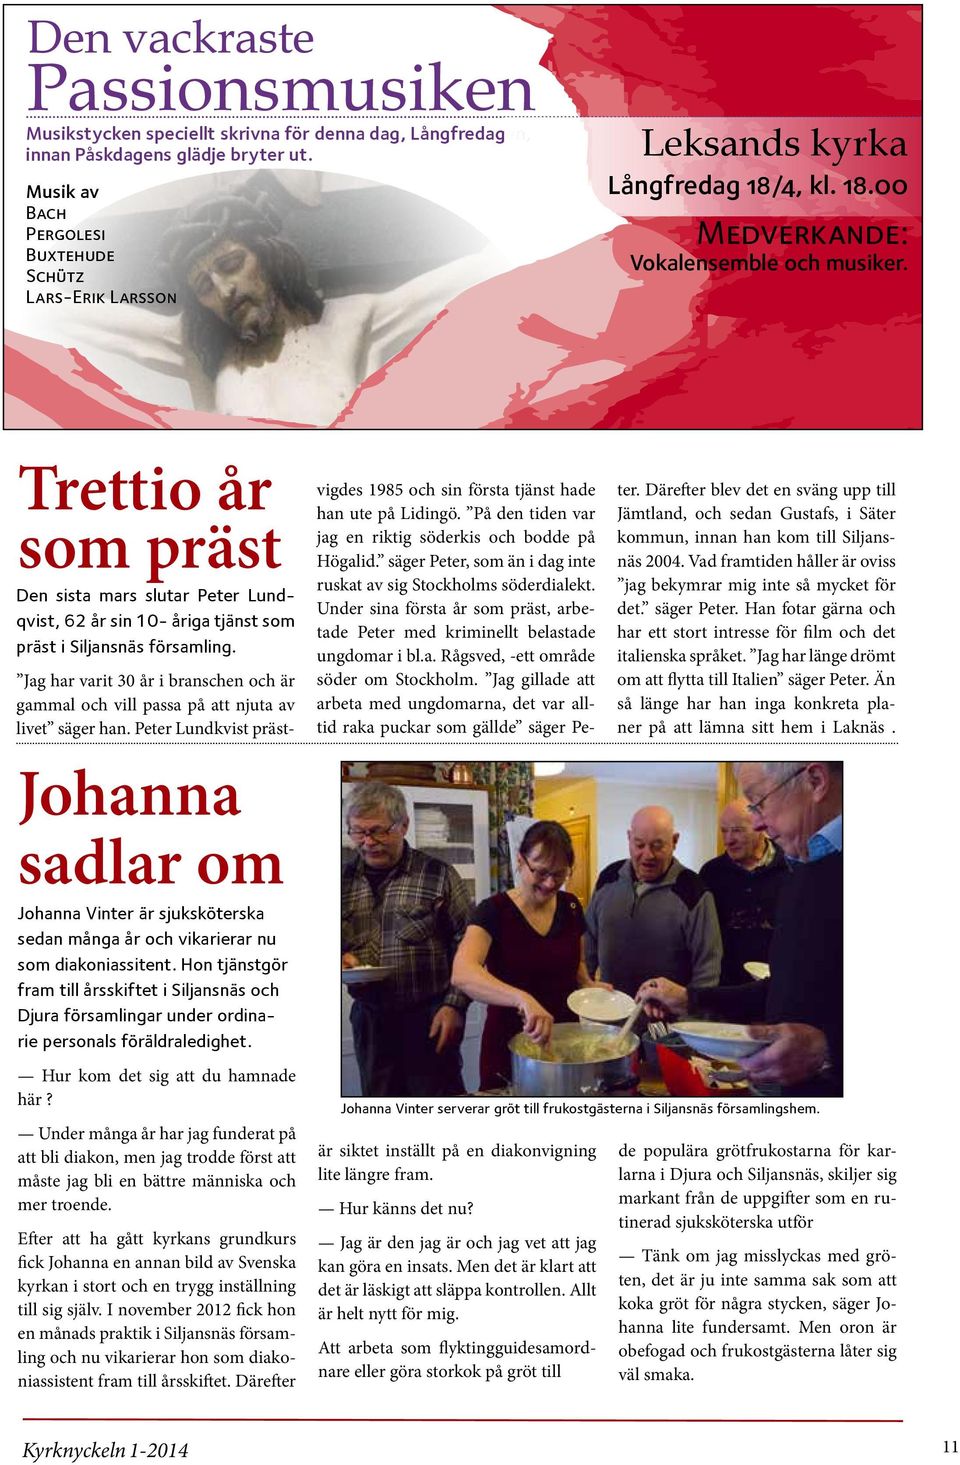 Trettio år som präst Den sista mars slutar Peter Lundqvist, 62 år sin 10- åriga tjänst som präst i Siljansnäs församling.